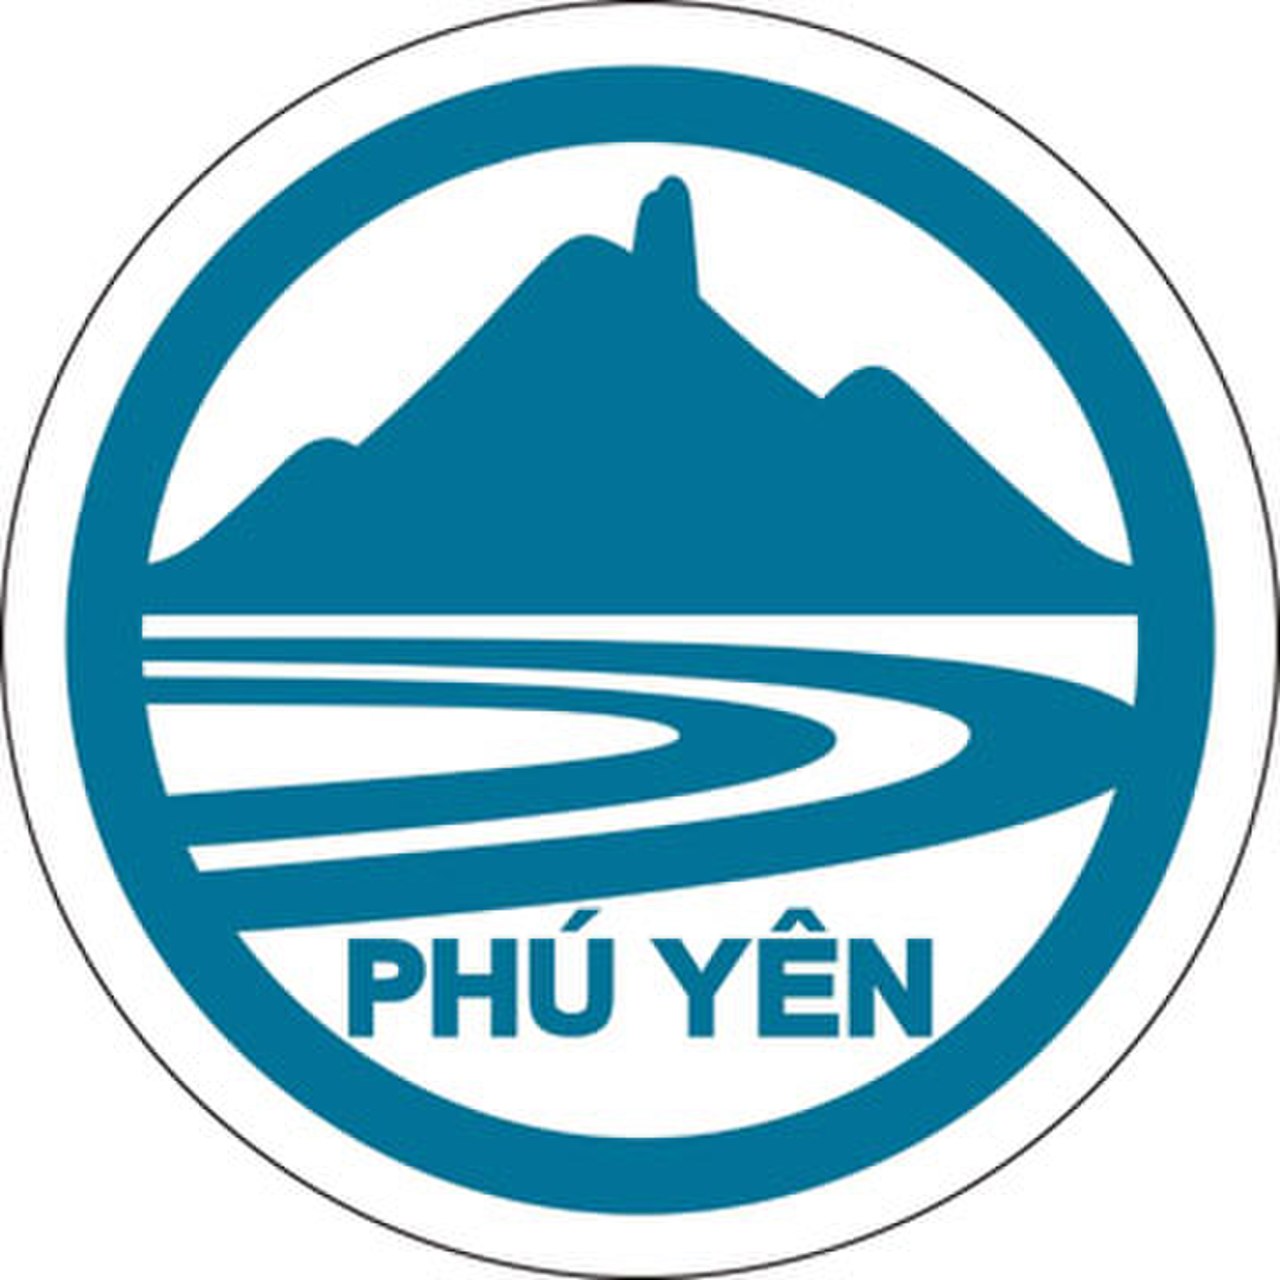 Phu-yen.jpg